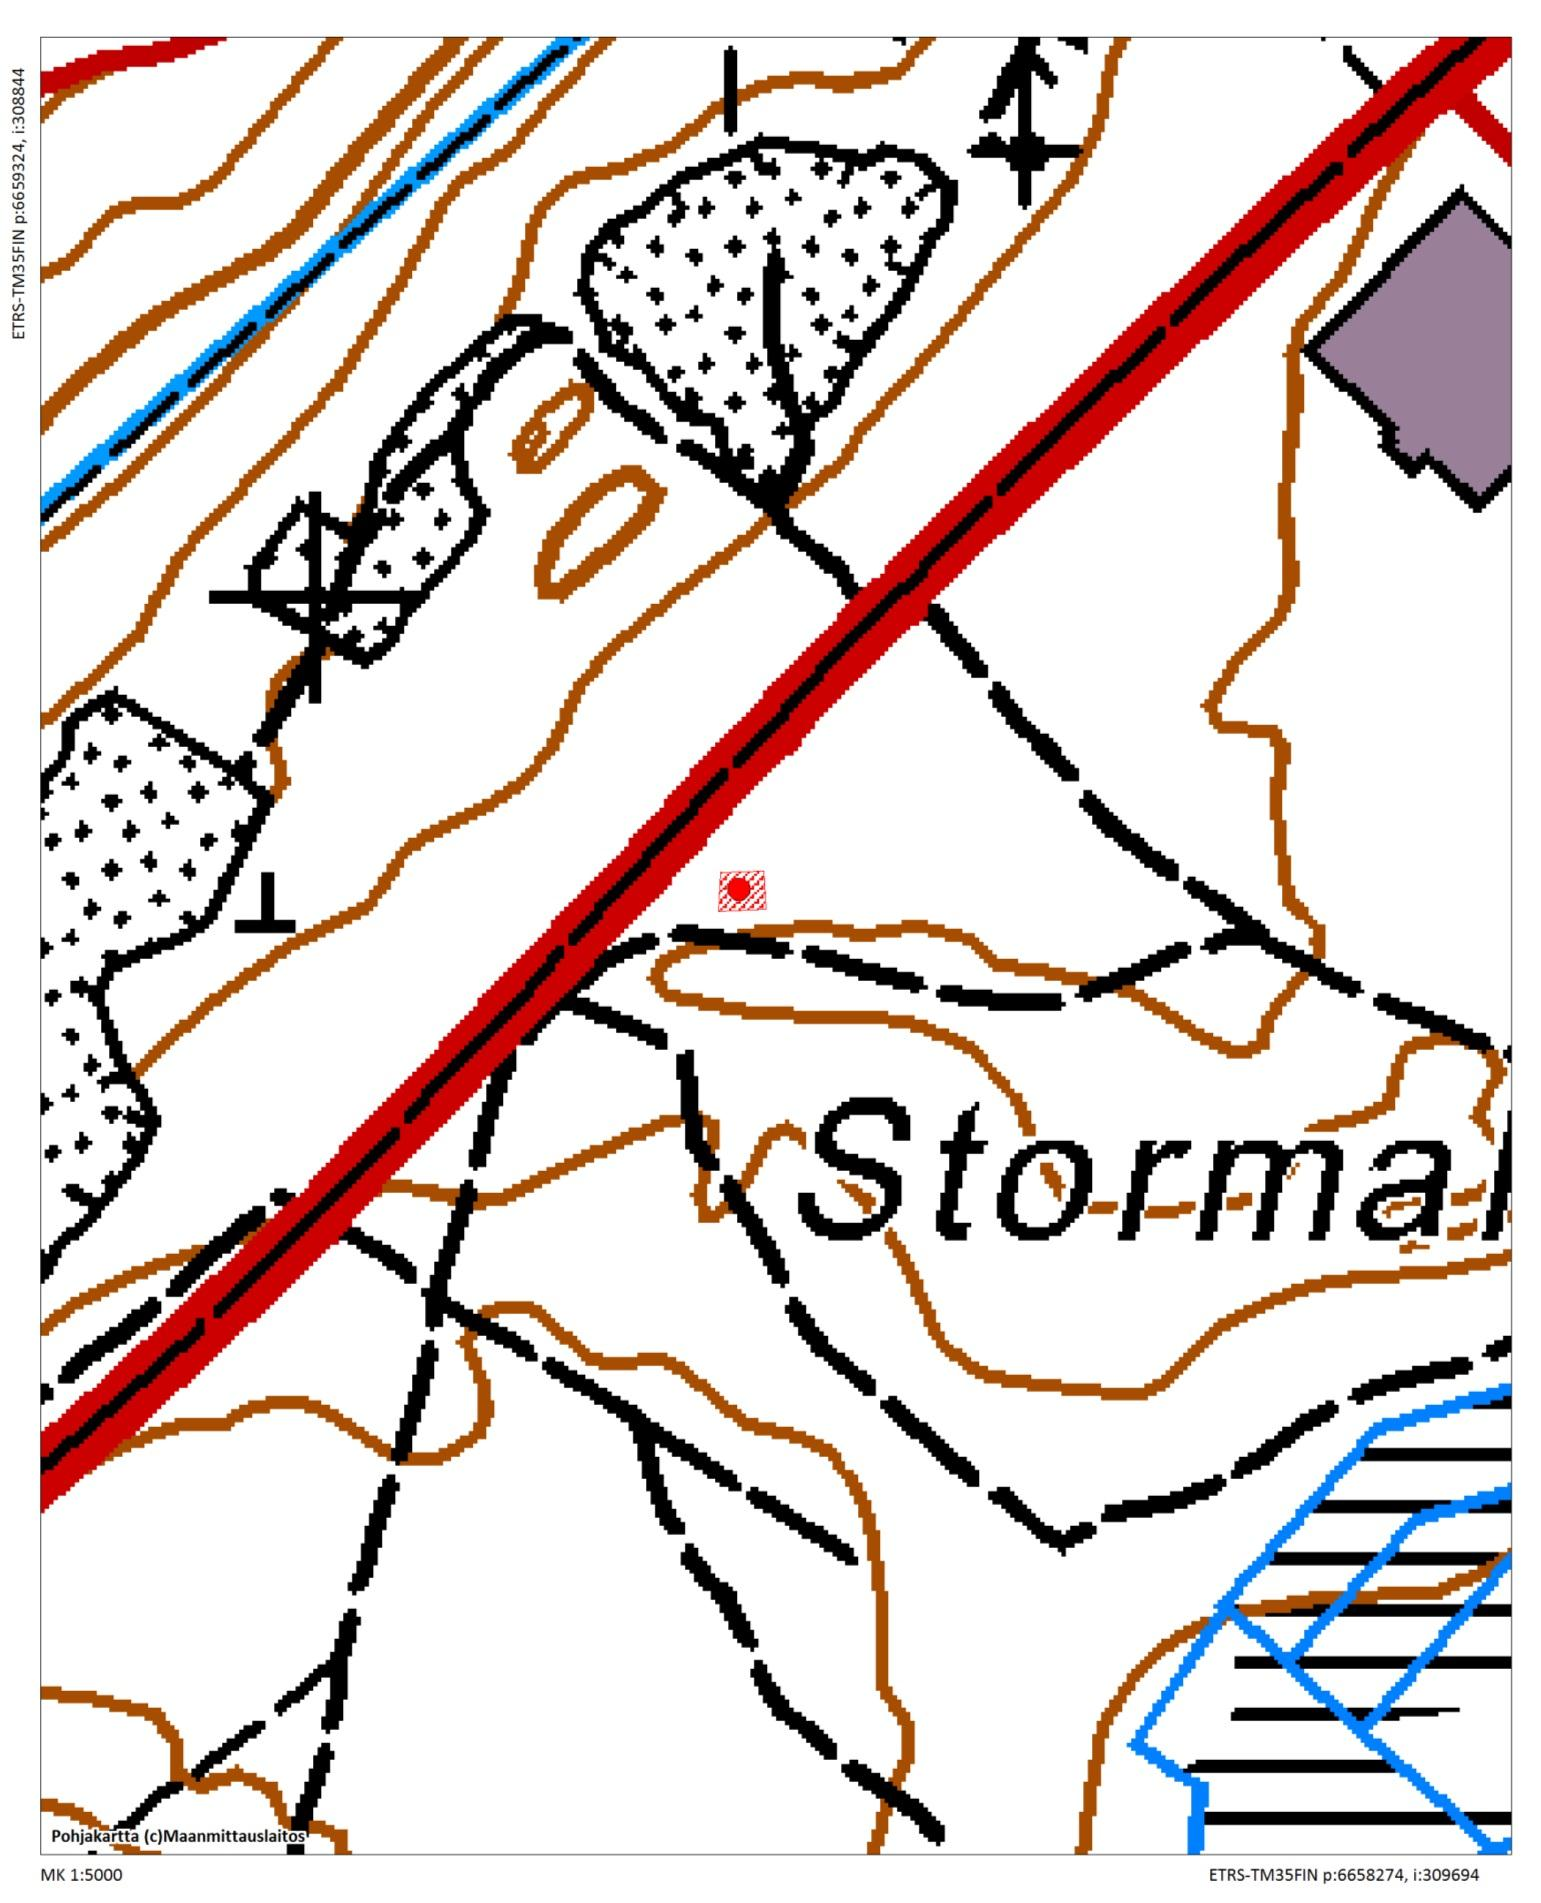 Stormalmenin kiinteän muinaisjäännöksen rajausehdotus.